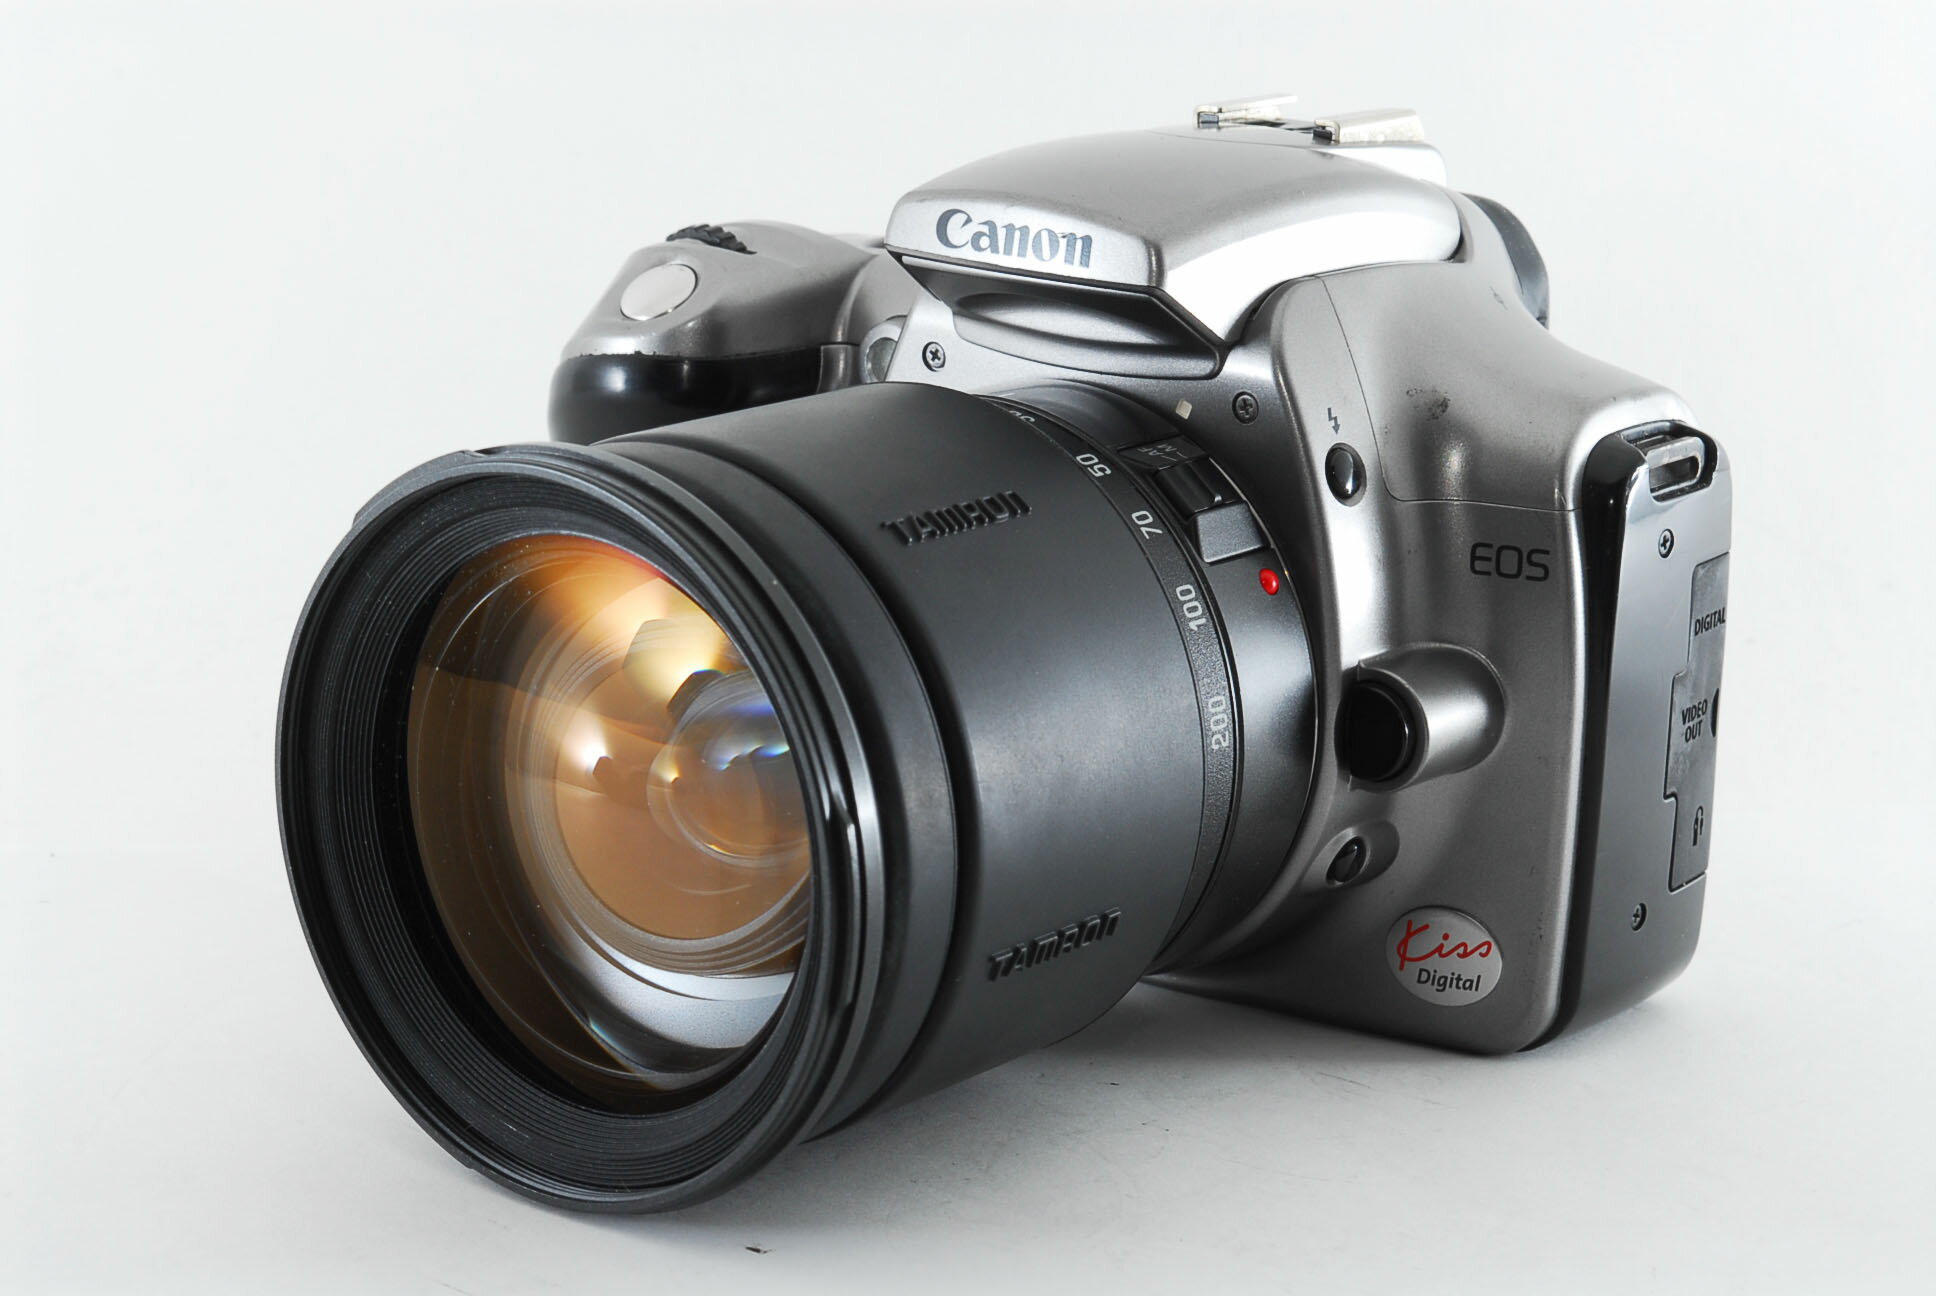 【中古】キヤノン Canon EOS Kiss Digital シルバー 高倍率レンズセット 美品 ストラップ 1GBコンパクトフラッシュ付き